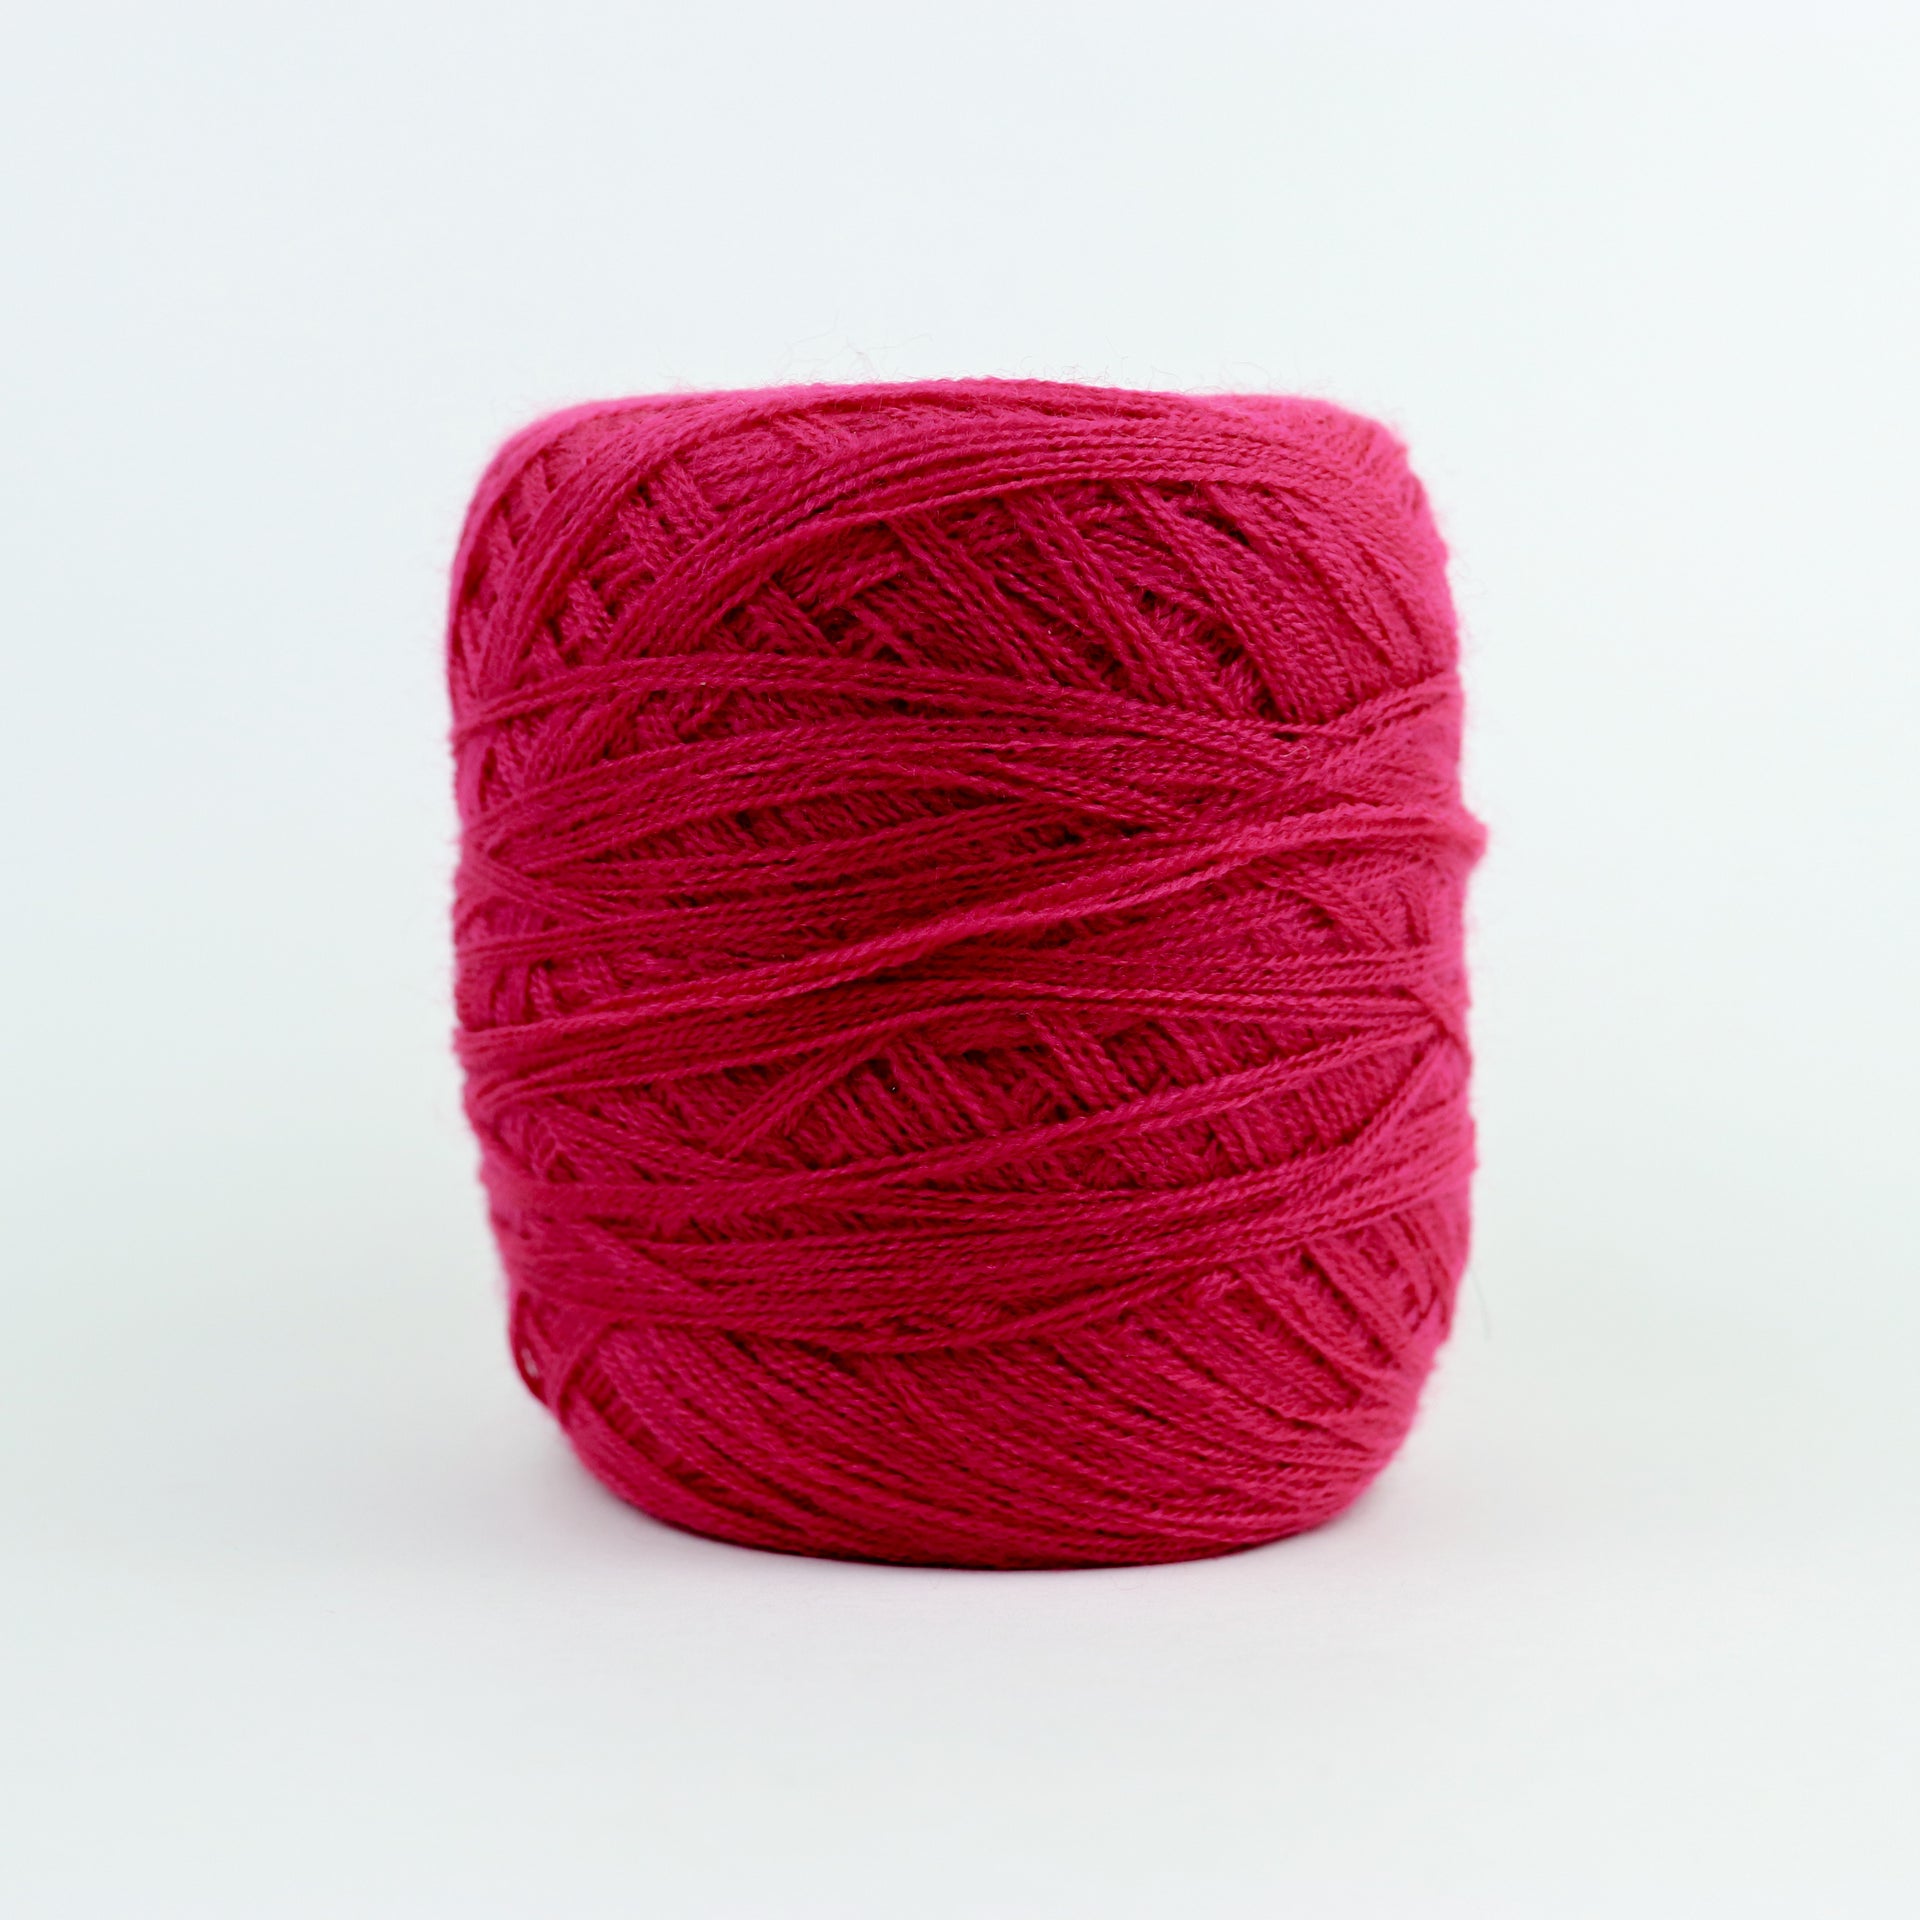 Dark Red - Yarn 1 mm